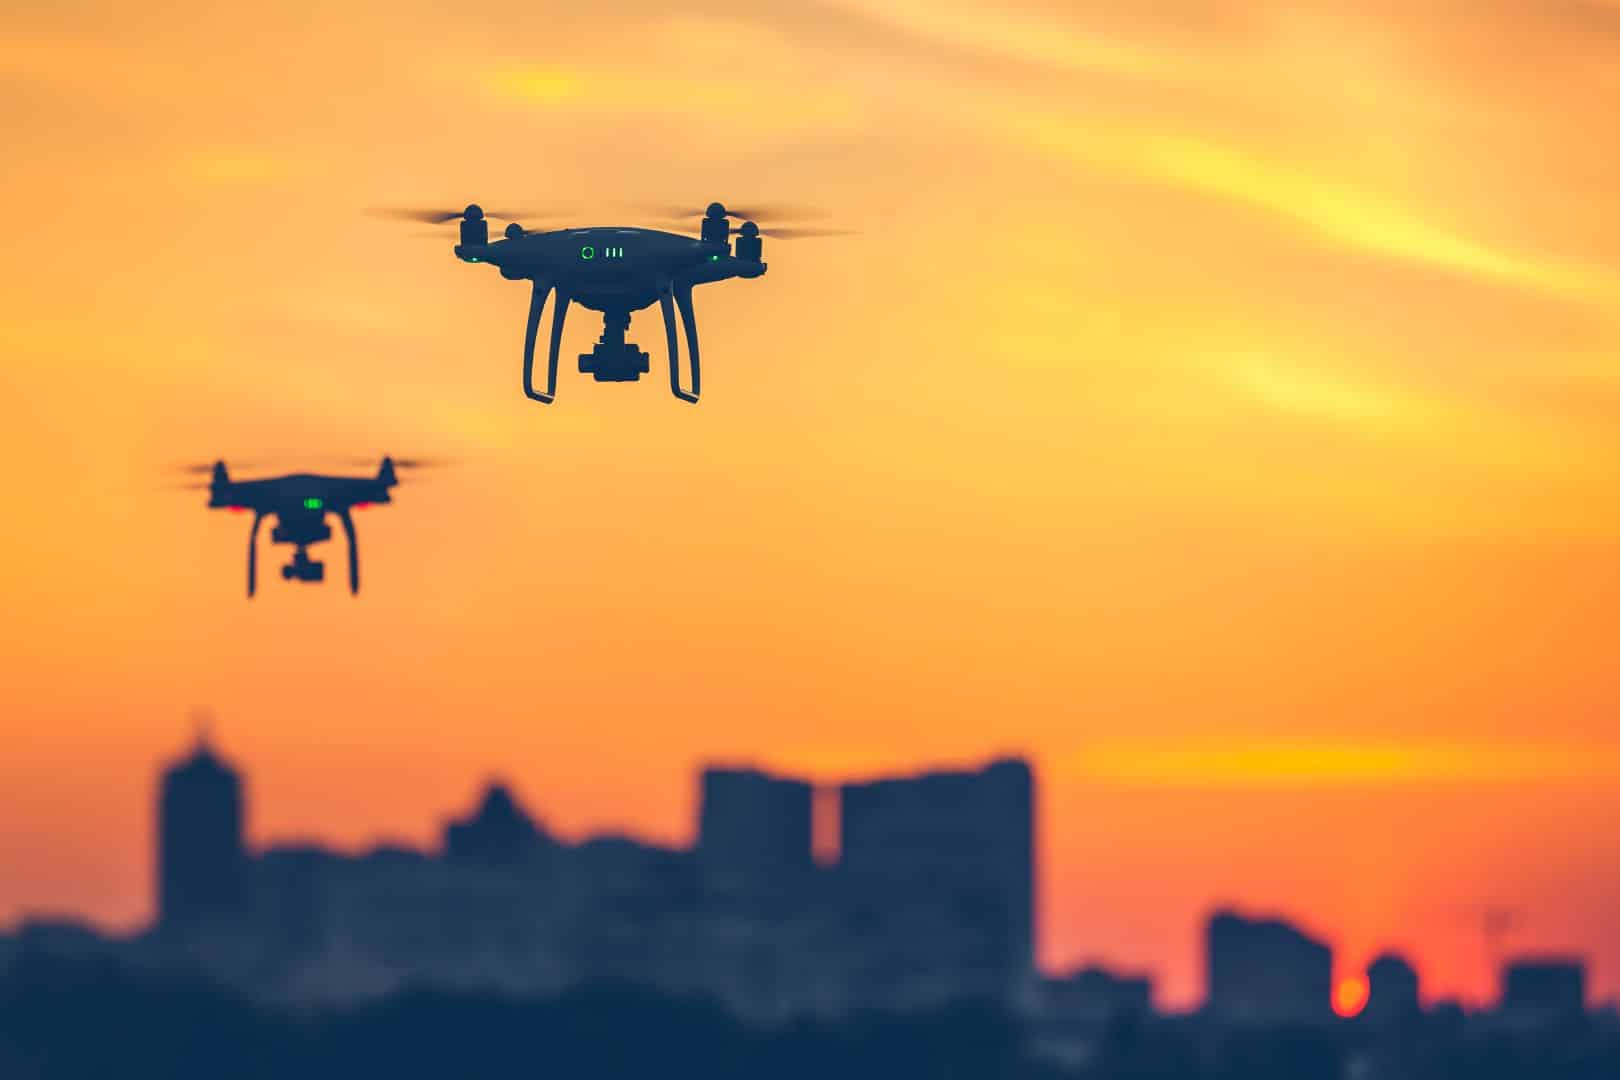 Dwa drony lecące na tle zachodzącego słońca z sylwetkami budynków miejskich w tle.